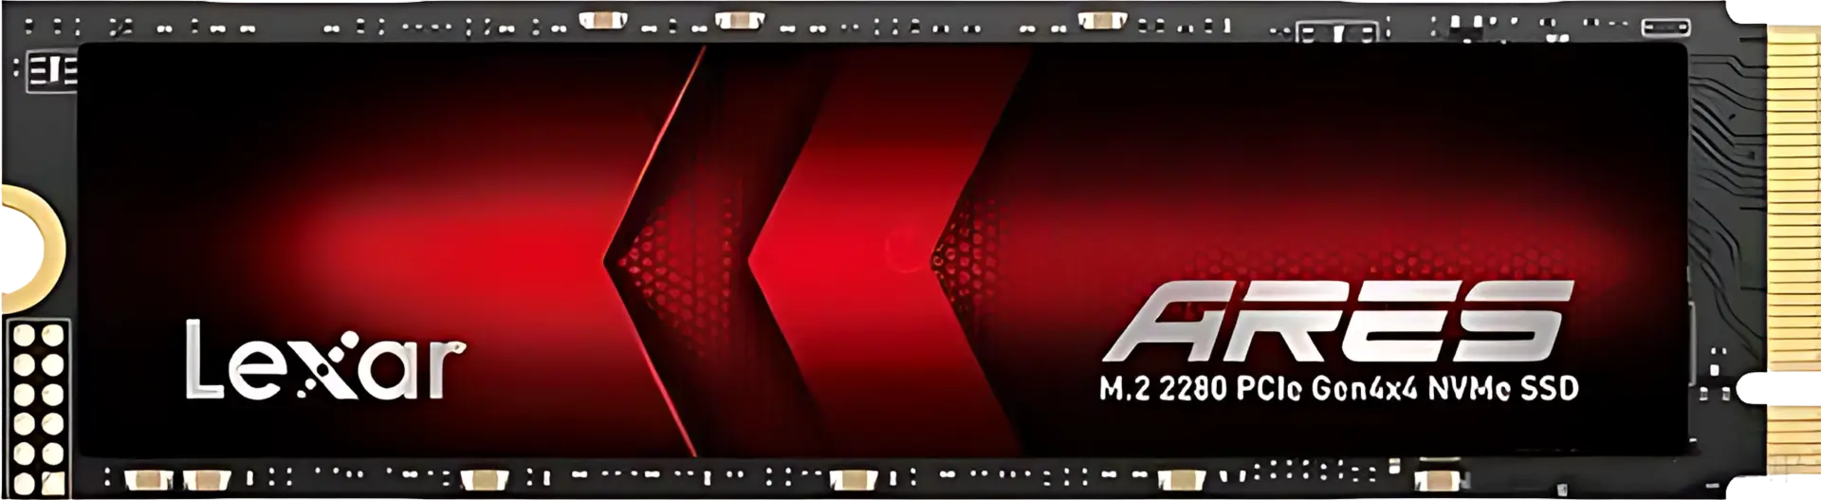 Lexar M.2 ARES Gen 4 NVMe 2TB SSD + Heatsink